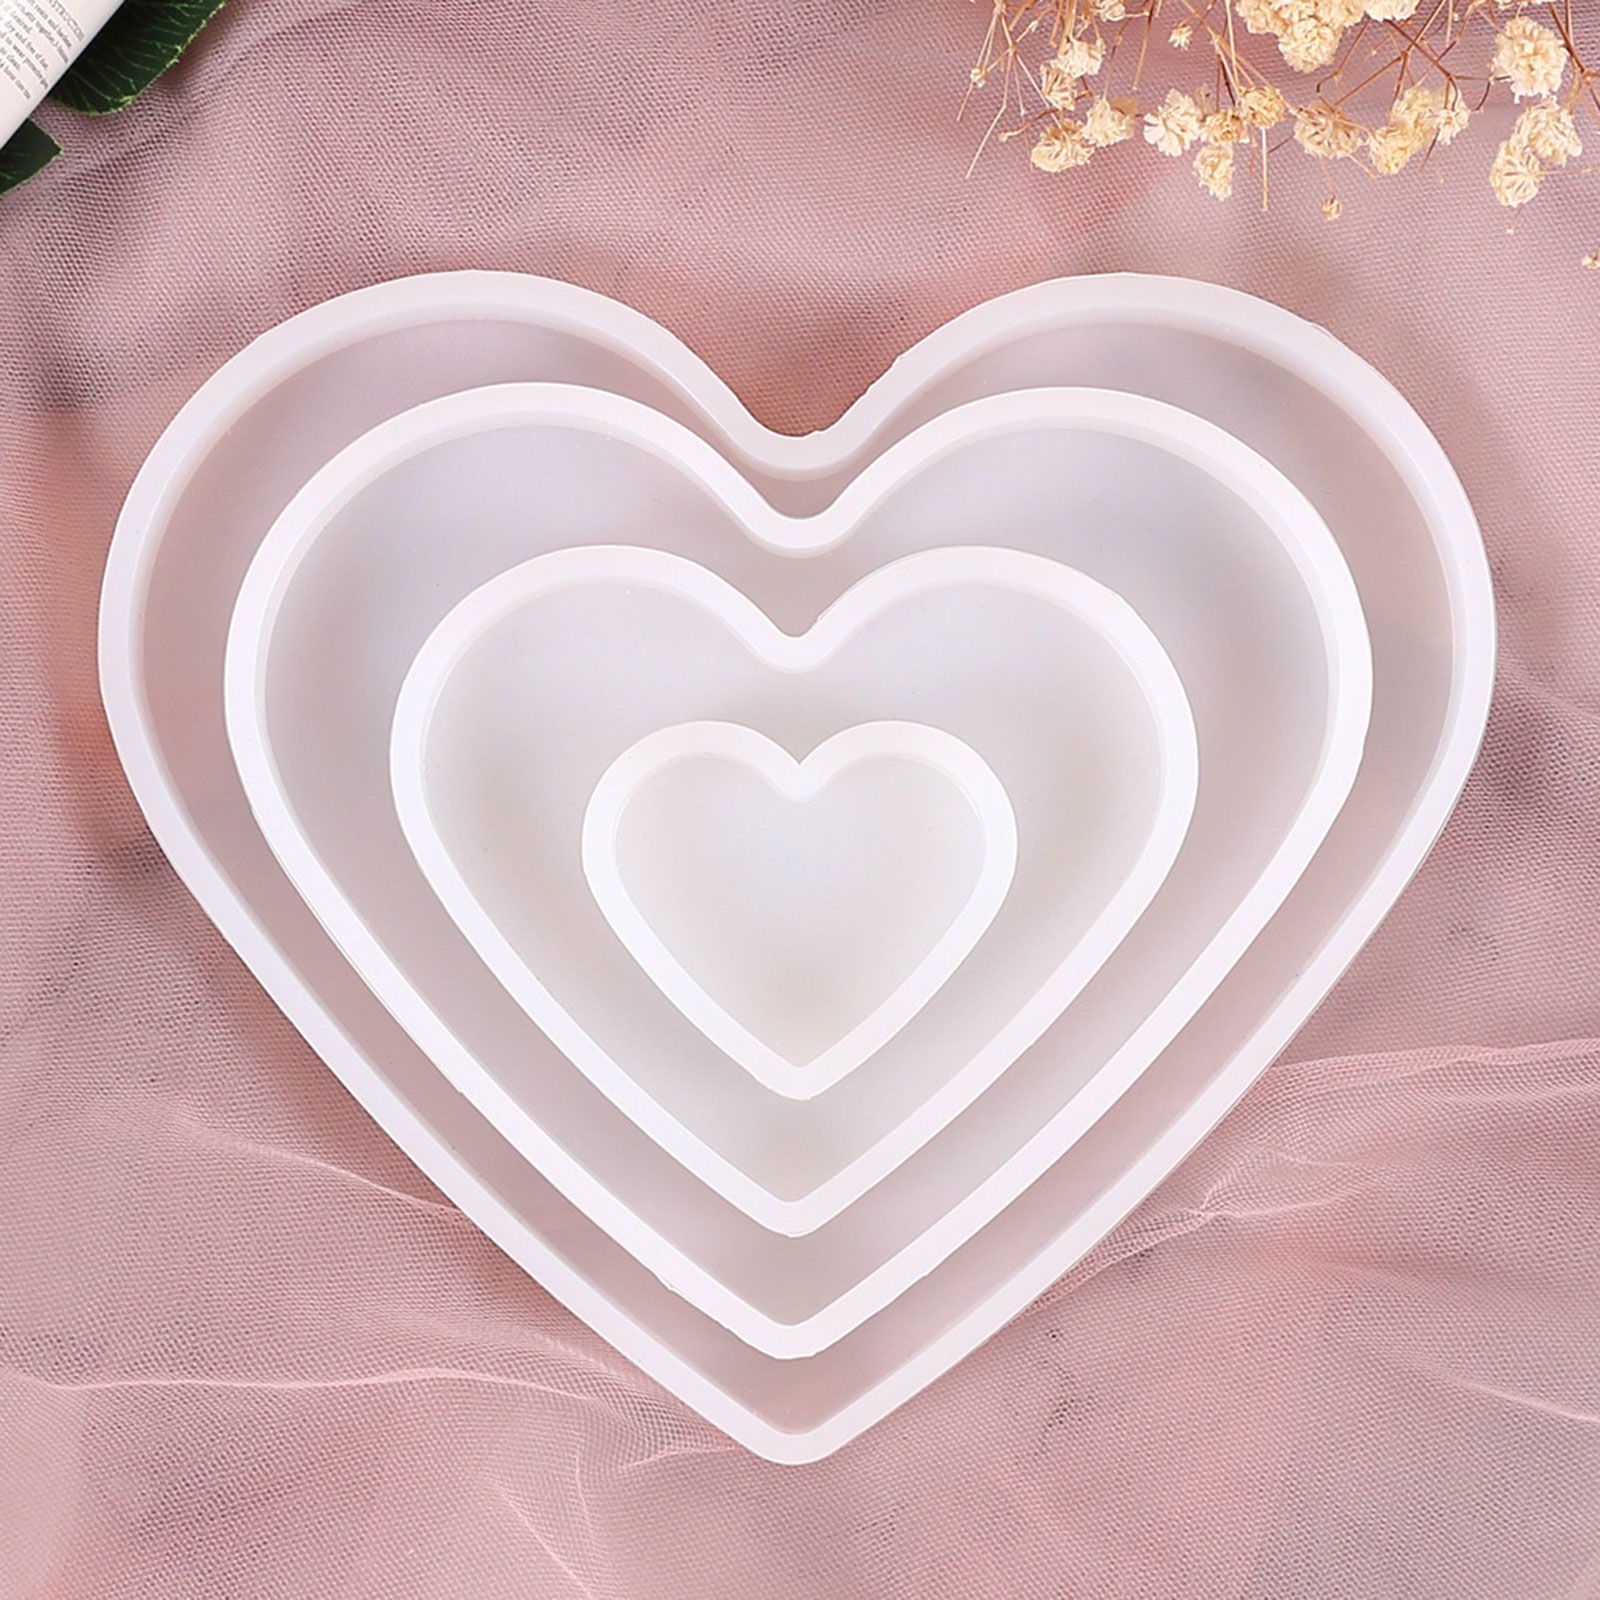 Bild von Silikon-Harz-Form für Schmuck machen Herz weiß 15cm x 11cm, 1 Stück